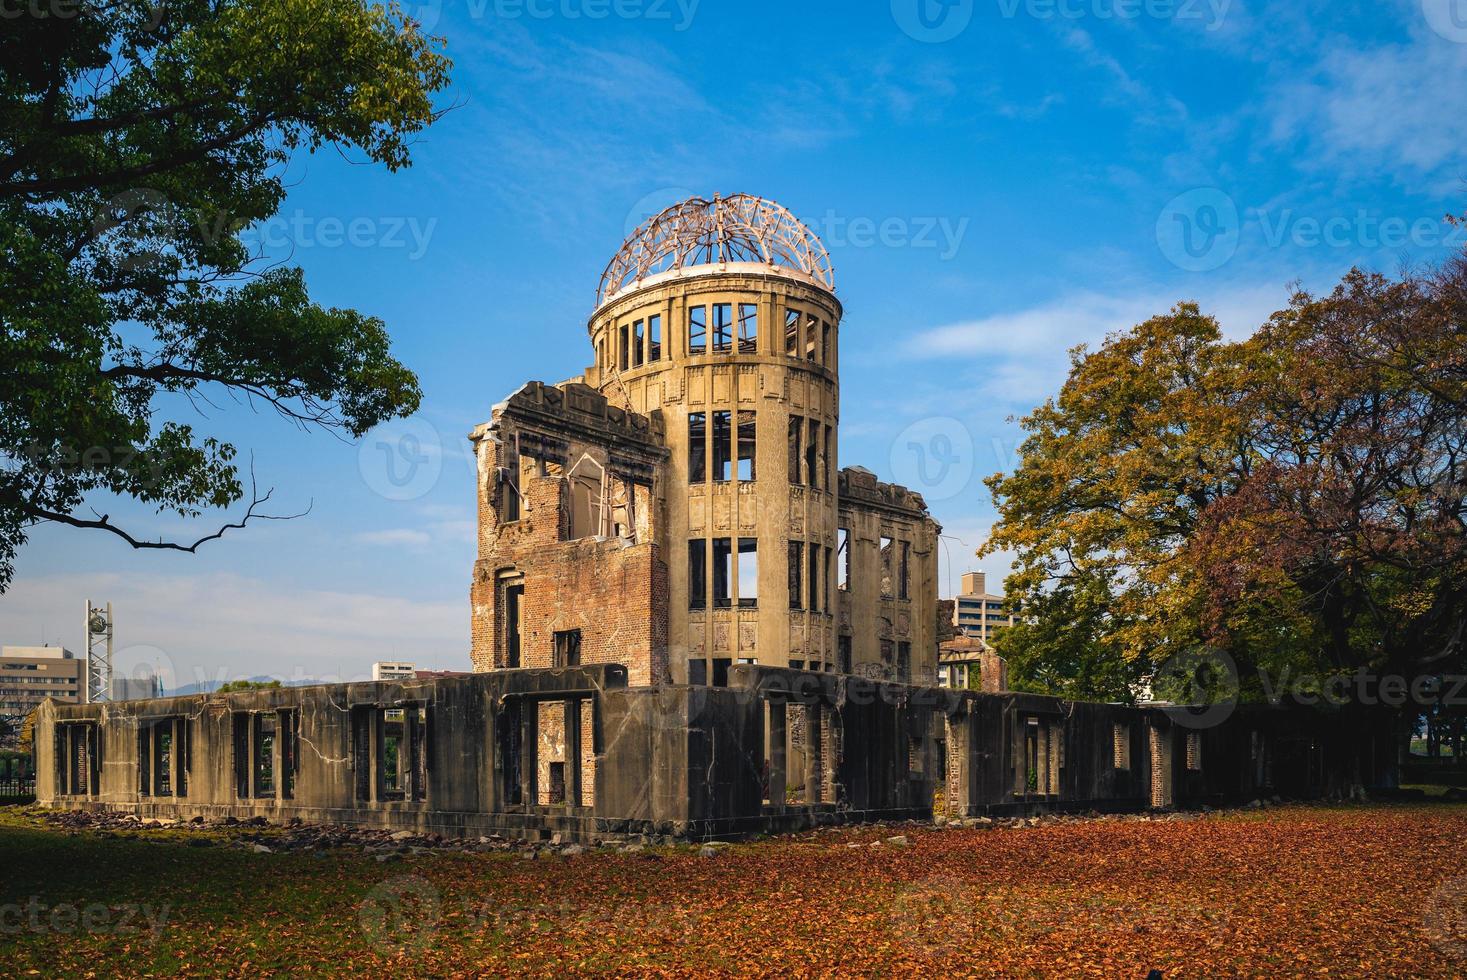 Genbaku Dome of Hiroshima Peace Memorial em Hiroshima, no Japão foto